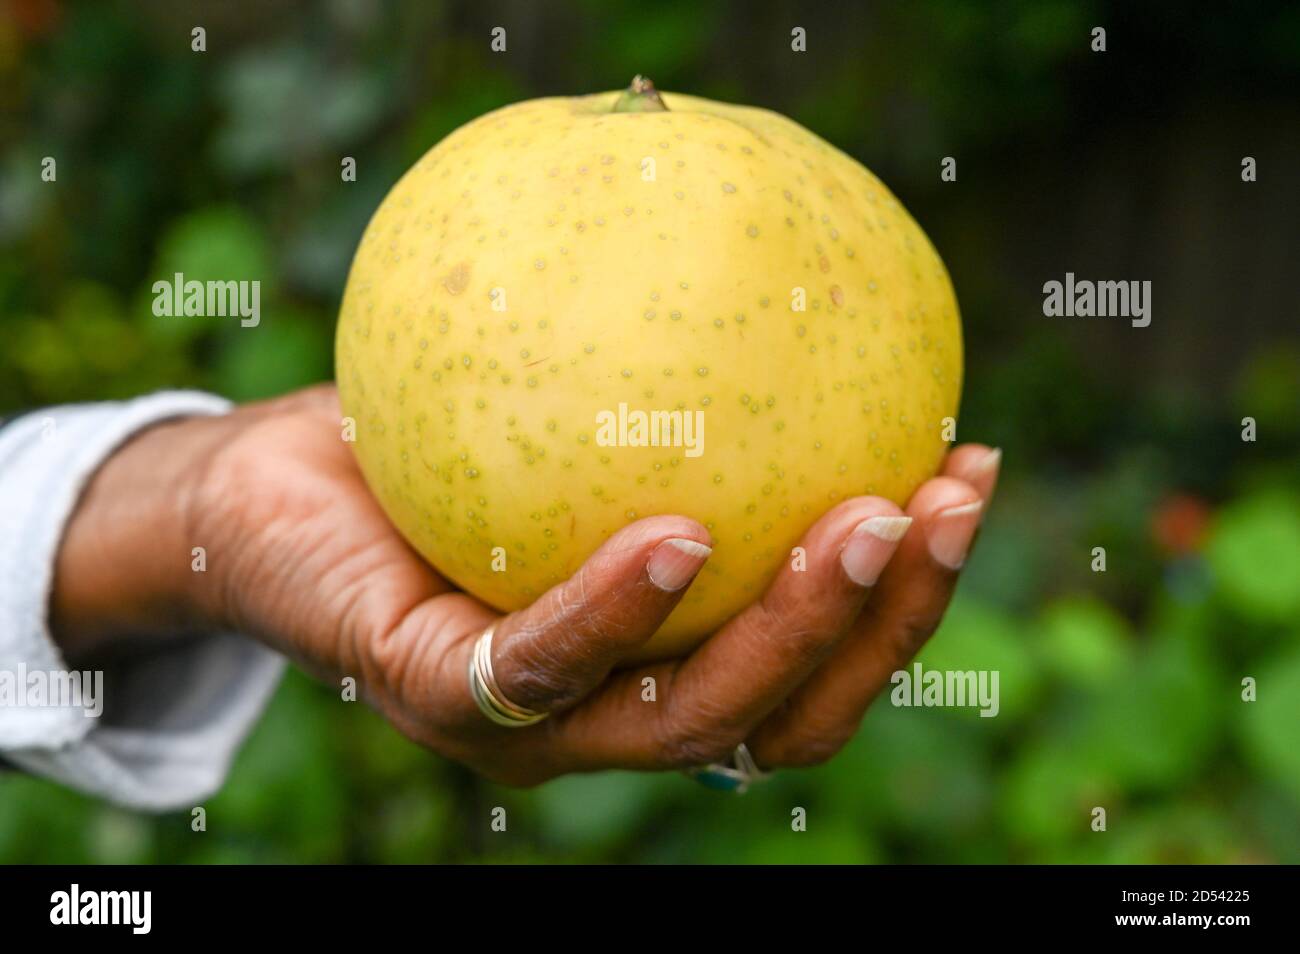 Grande pera asiatica/Nashi coltivata a mano. Foto Stock